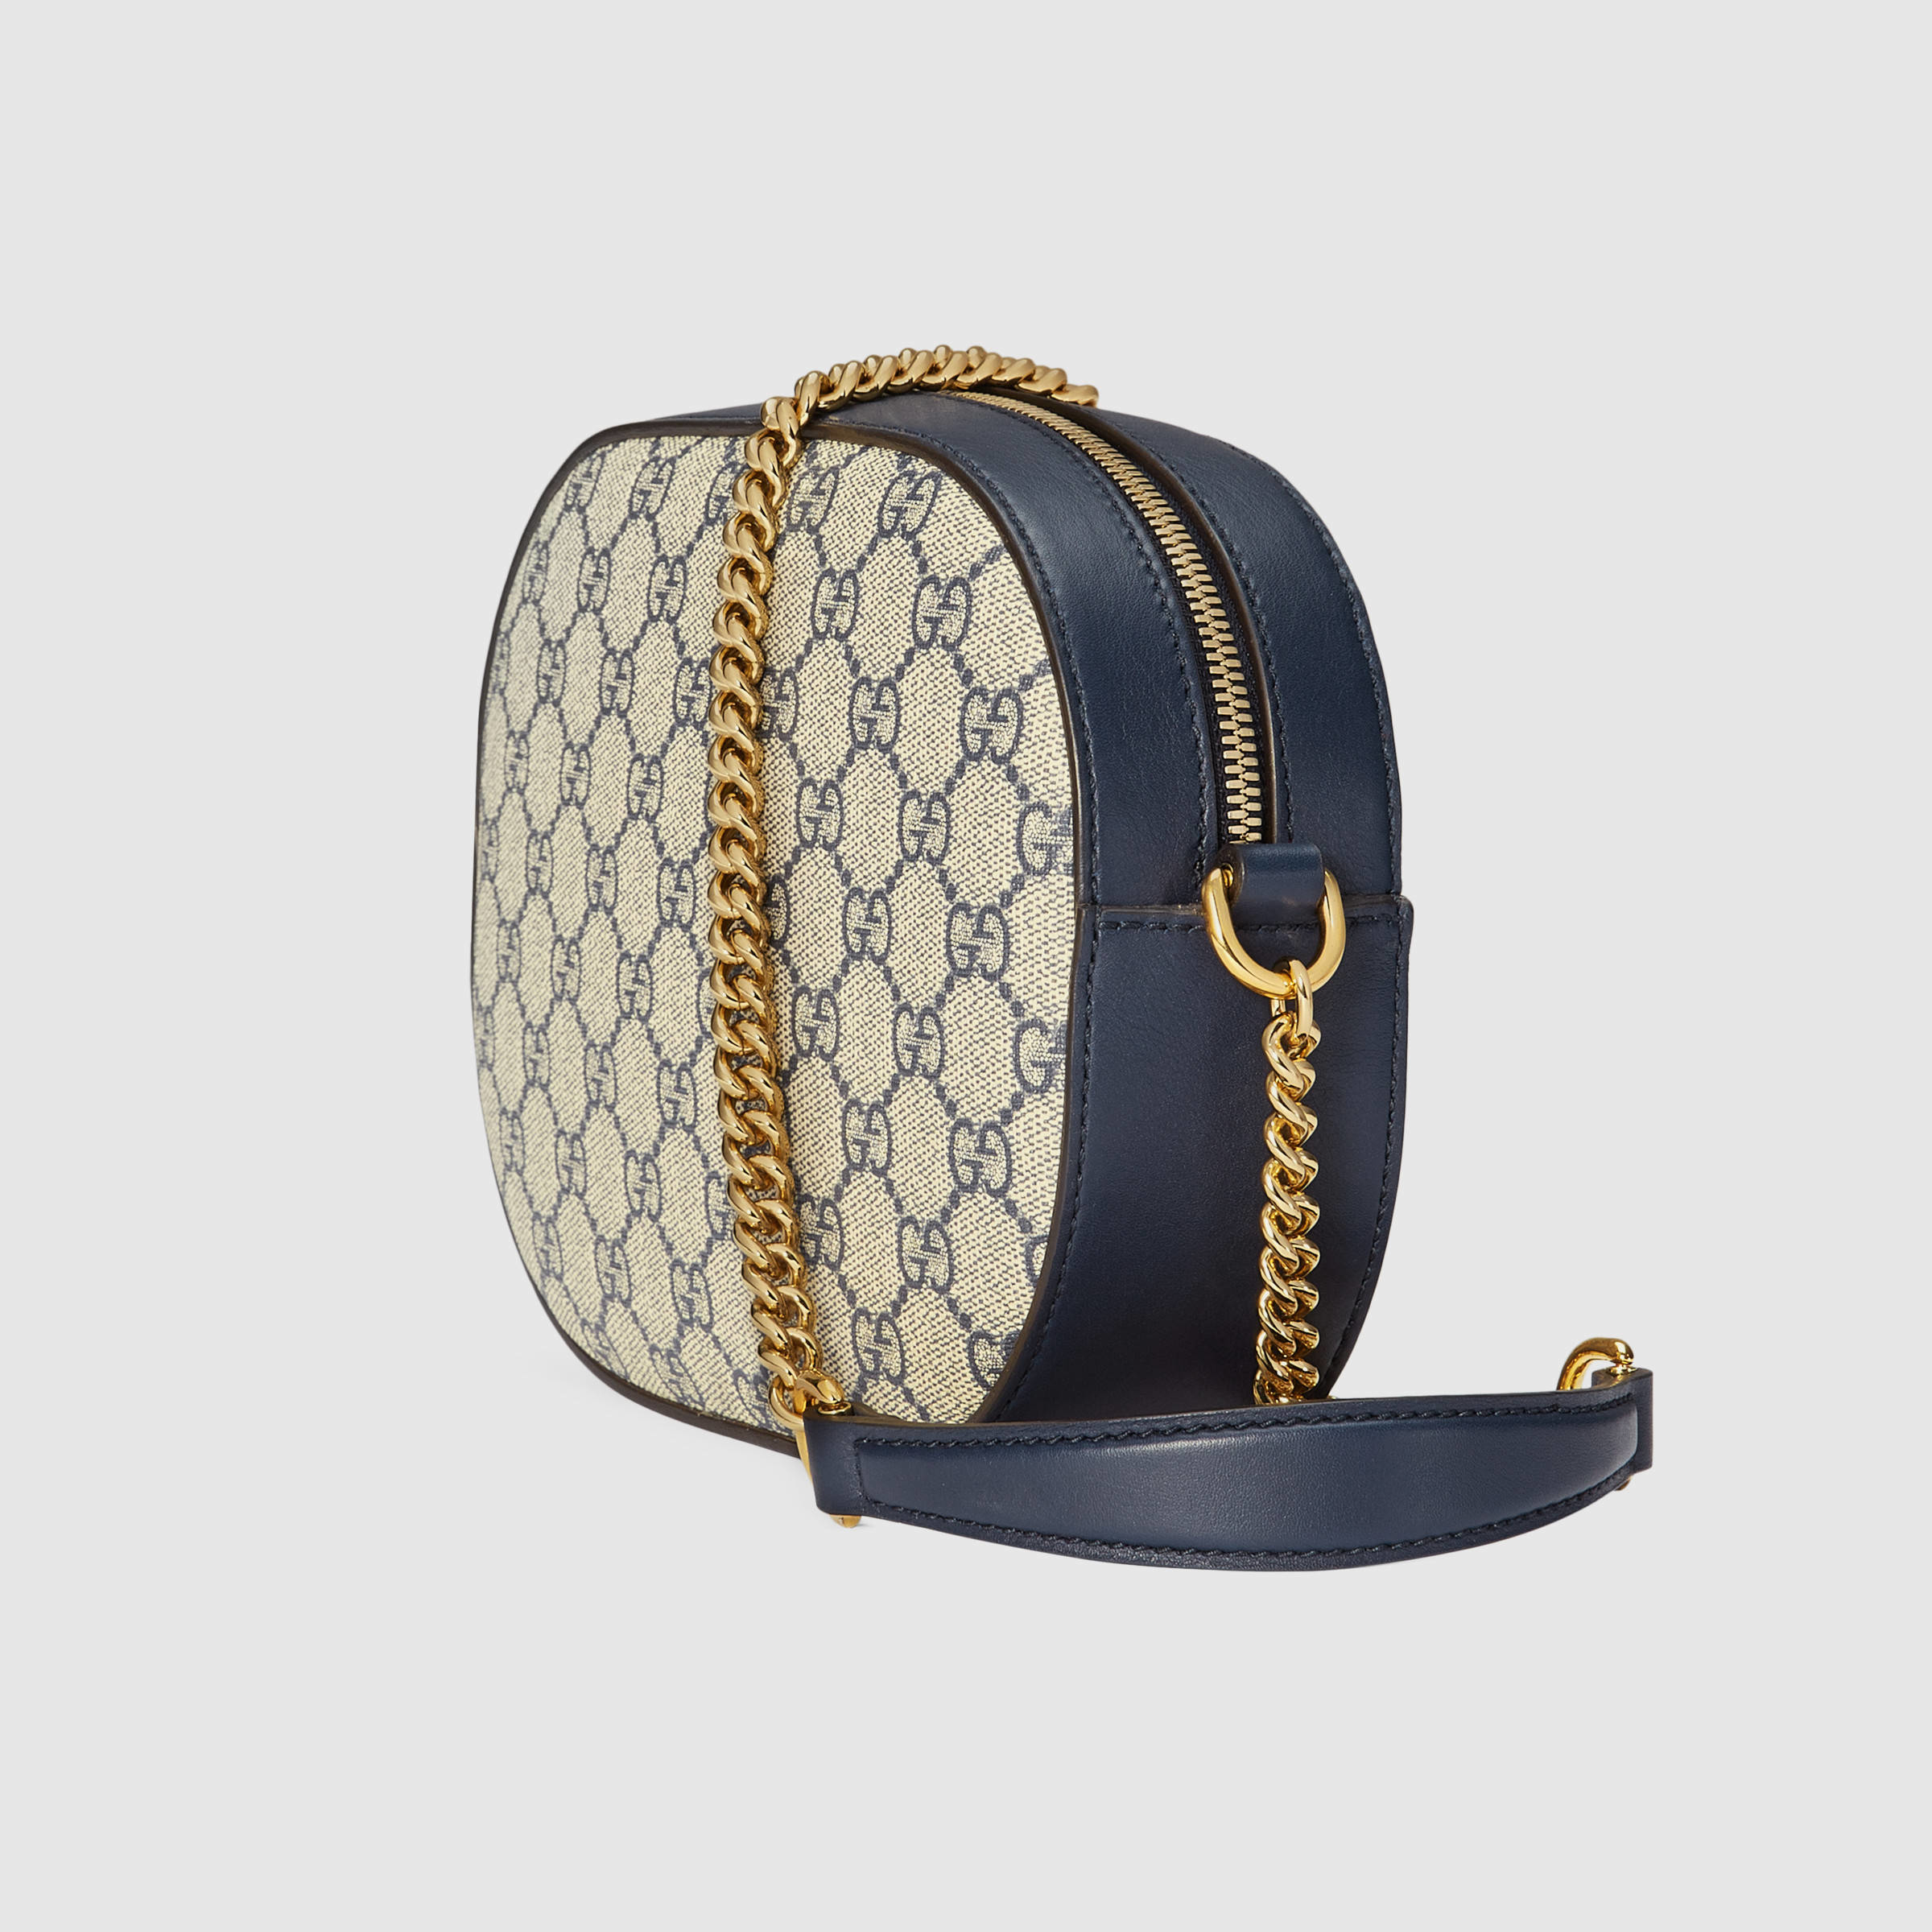 Gucci Canvas Gg Supreme Mini Chain Bag in Gray - Lyst